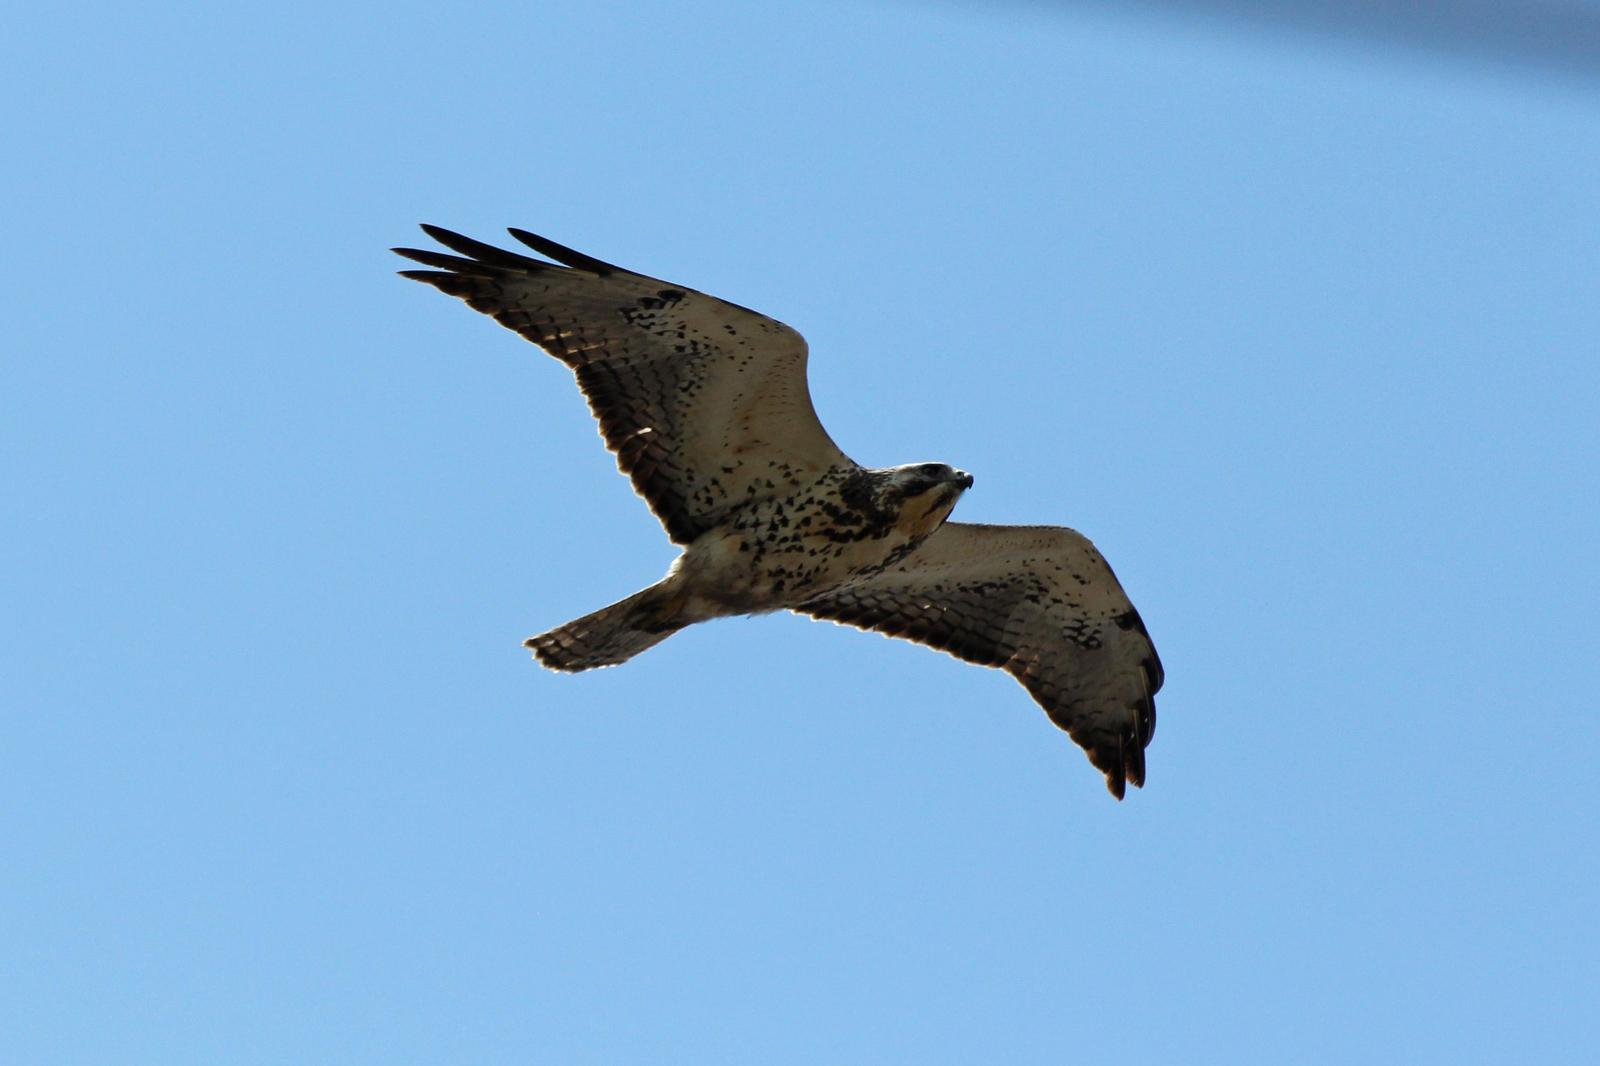 Swainson's Hawk Photo by Kristy Baker